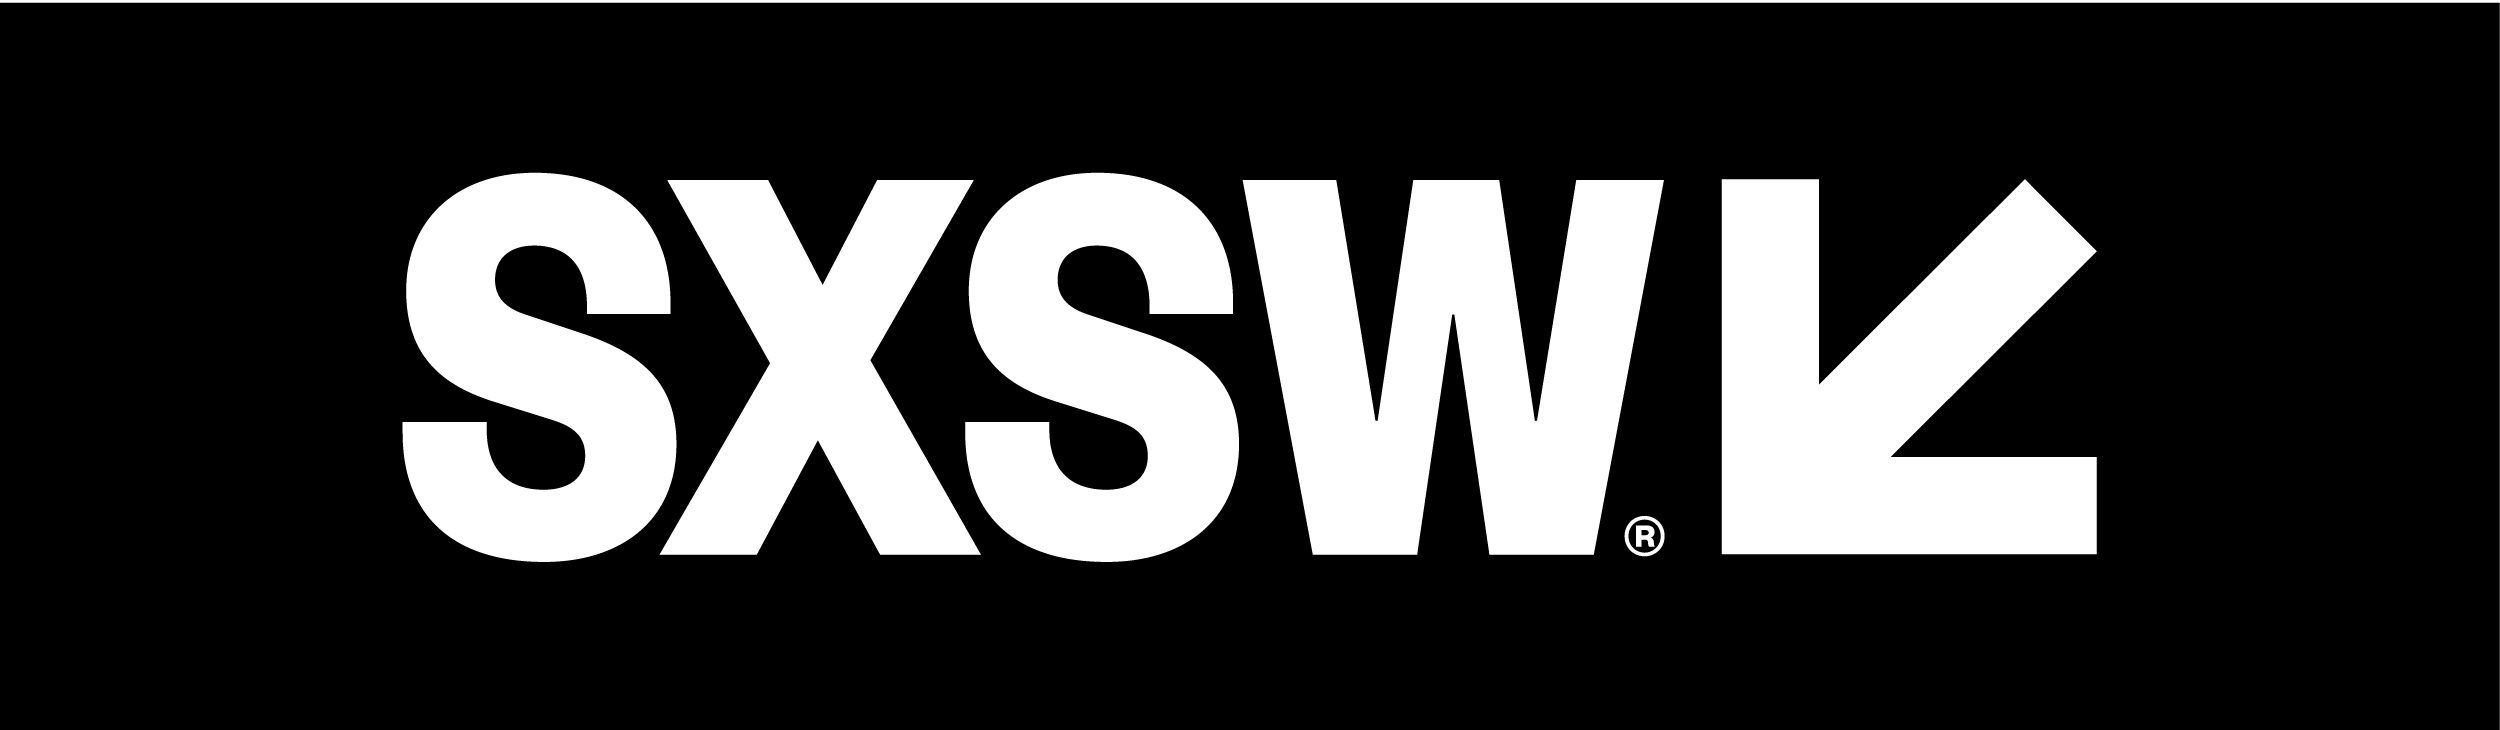 SXSW Sydney Announces Full Event Schedule